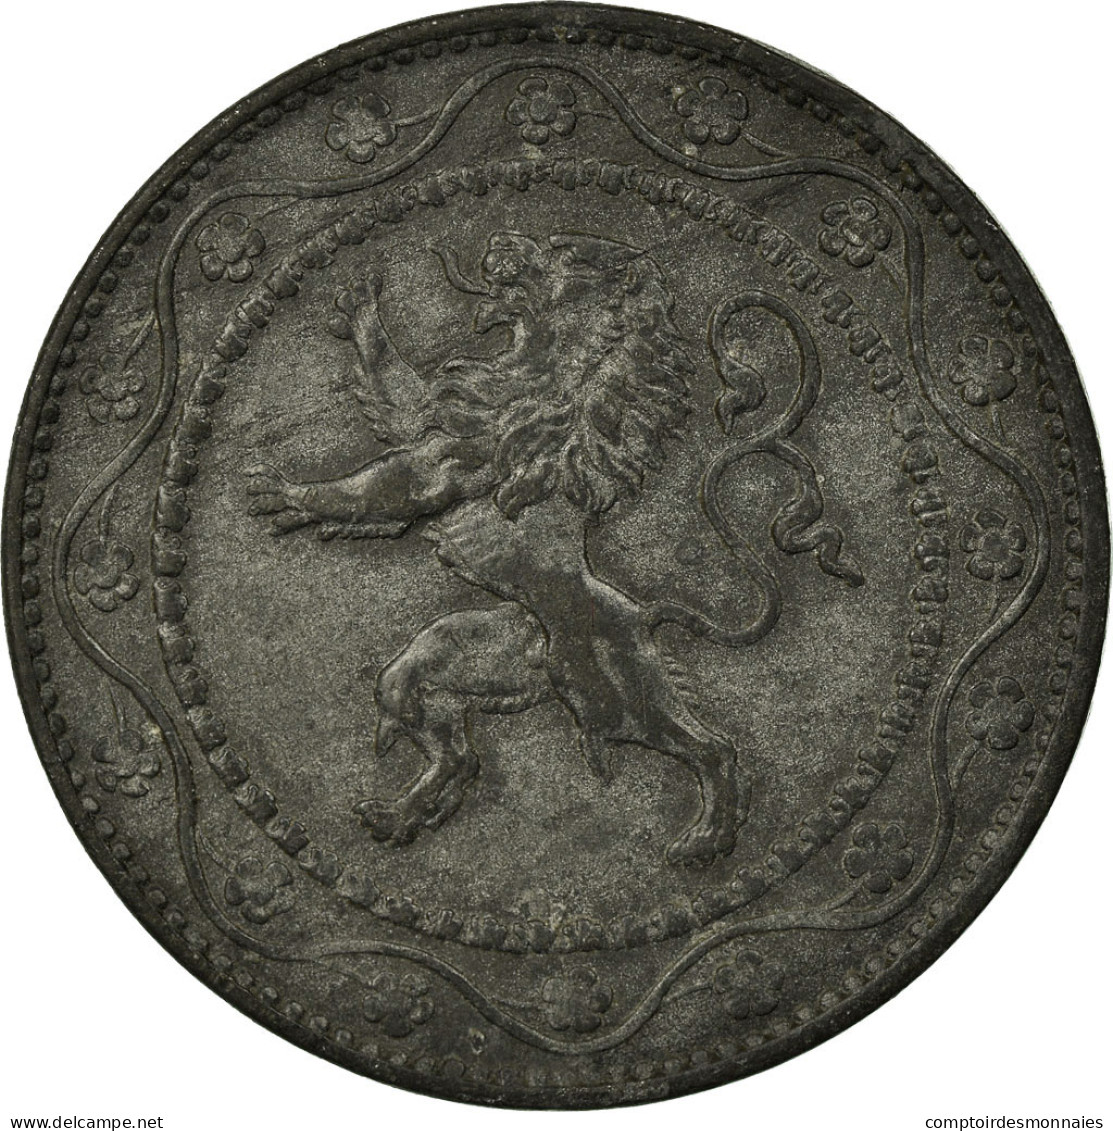 Monnaie, Belgique, 25 Centimes, 1918, TTB, Zinc, KM:82 - 25 Cents